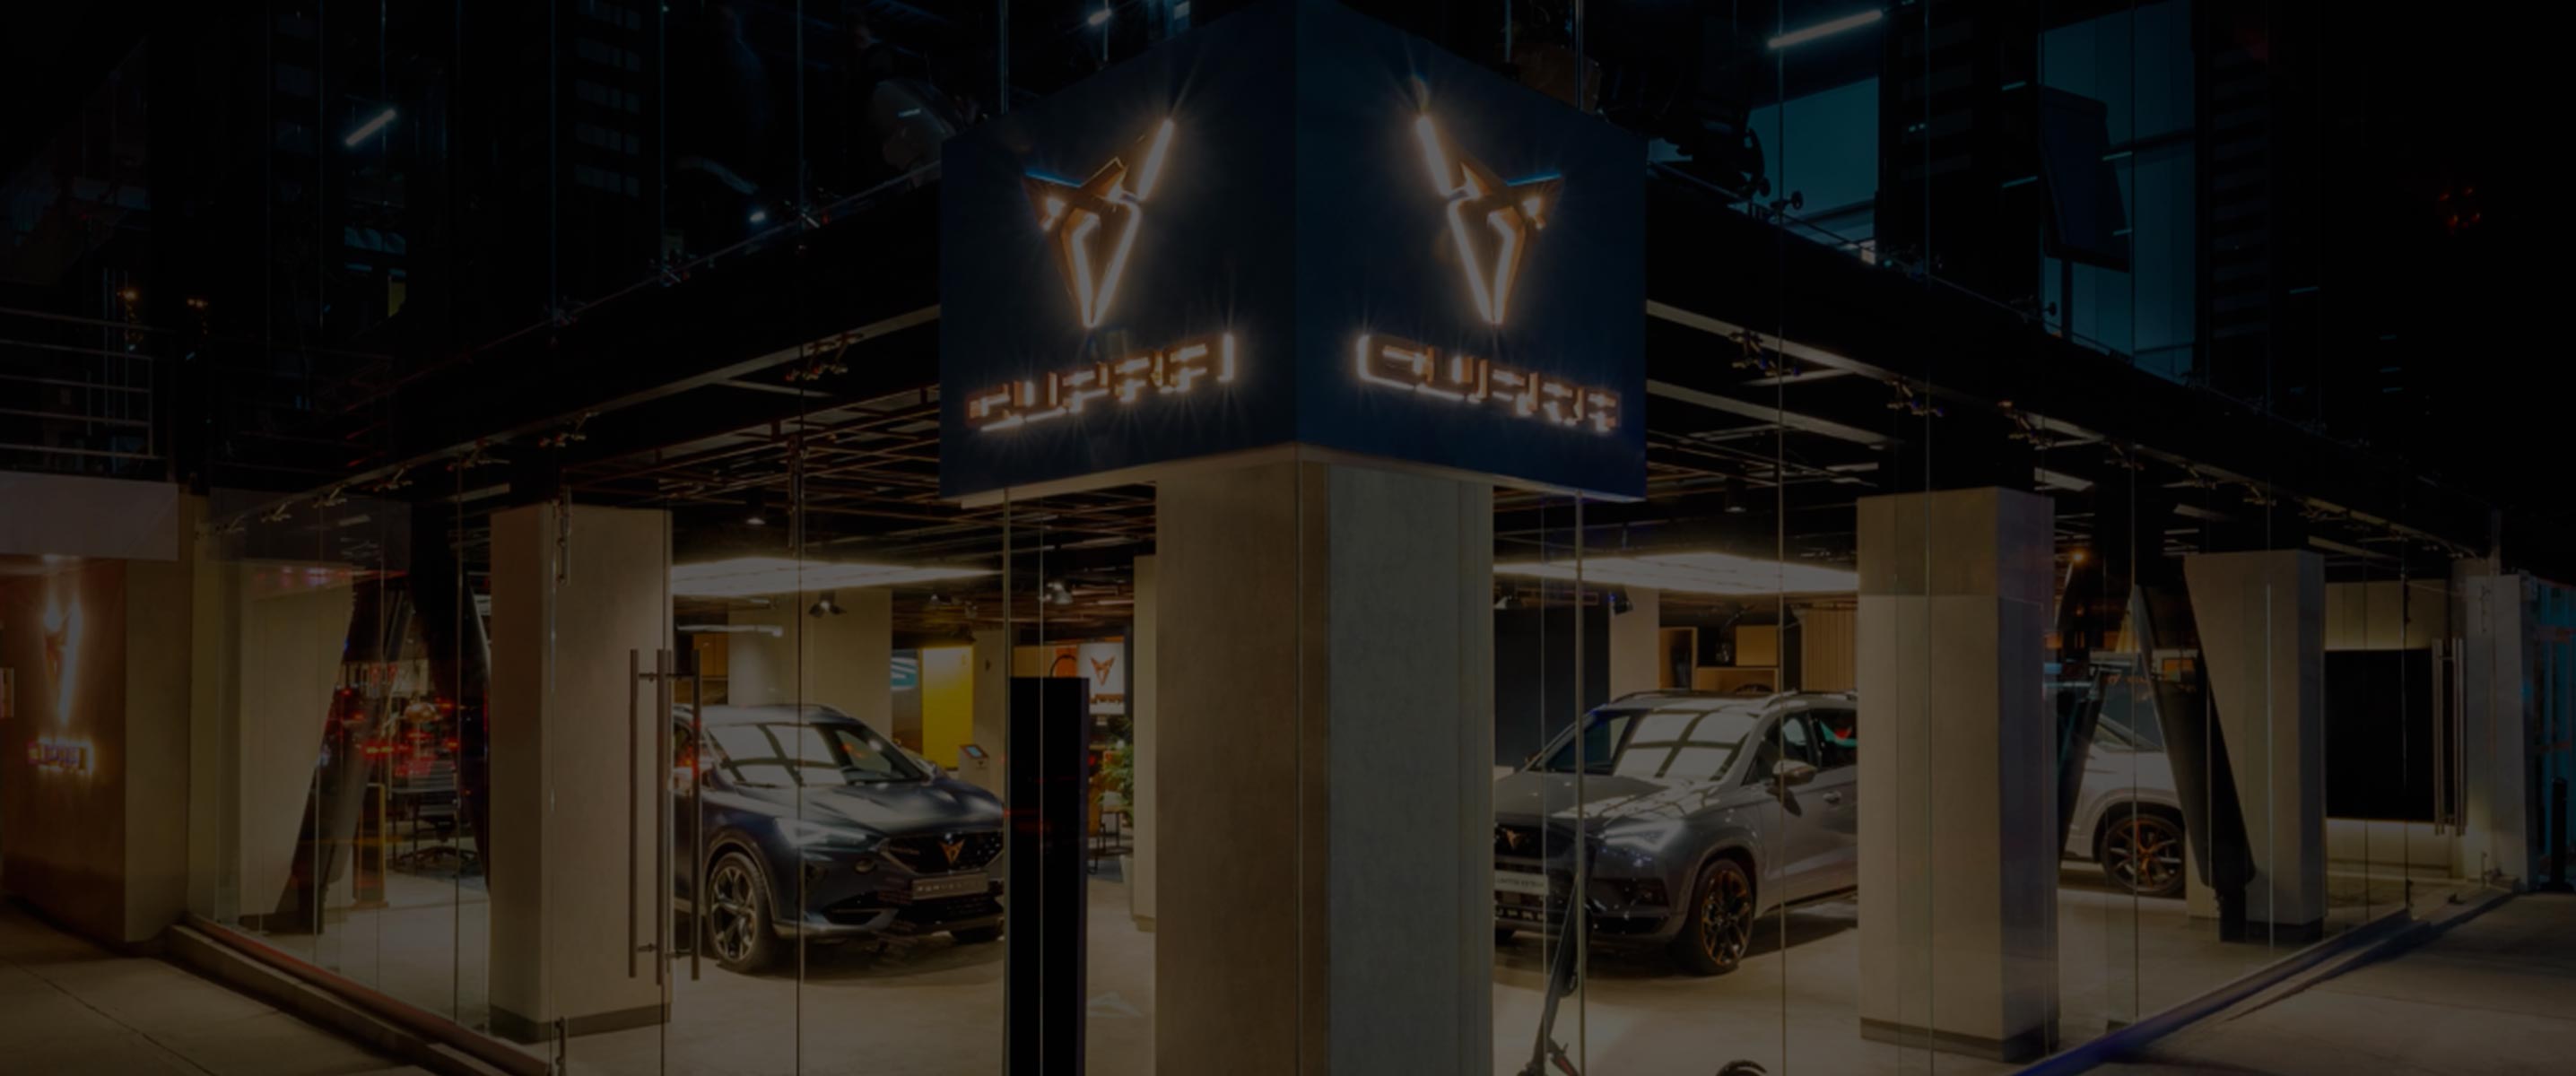 CUPRA inaugura su primera CUPRA Garage mundial en México